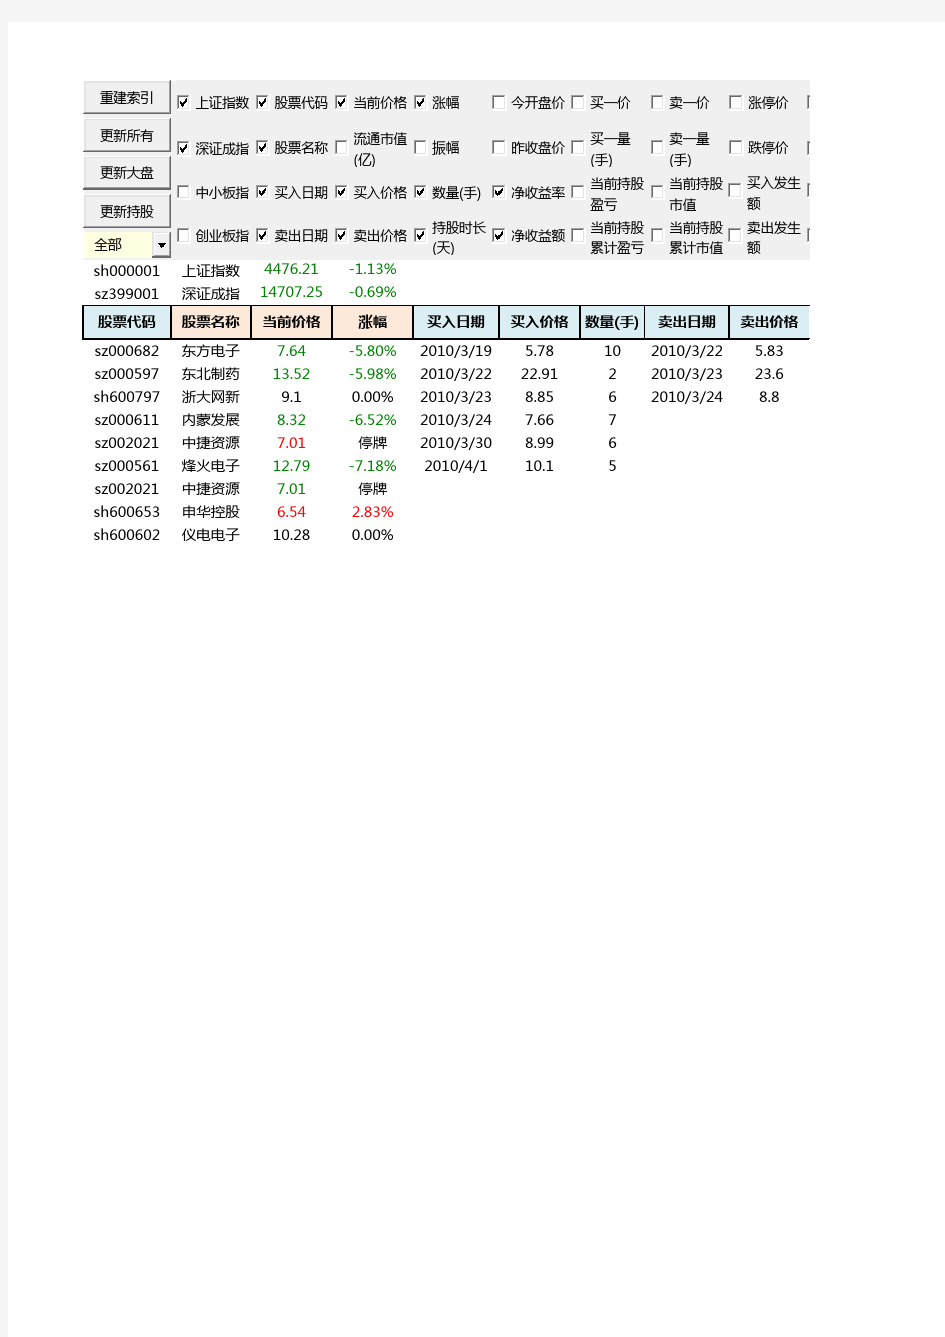 分享自己做的Excel股票交易记录表